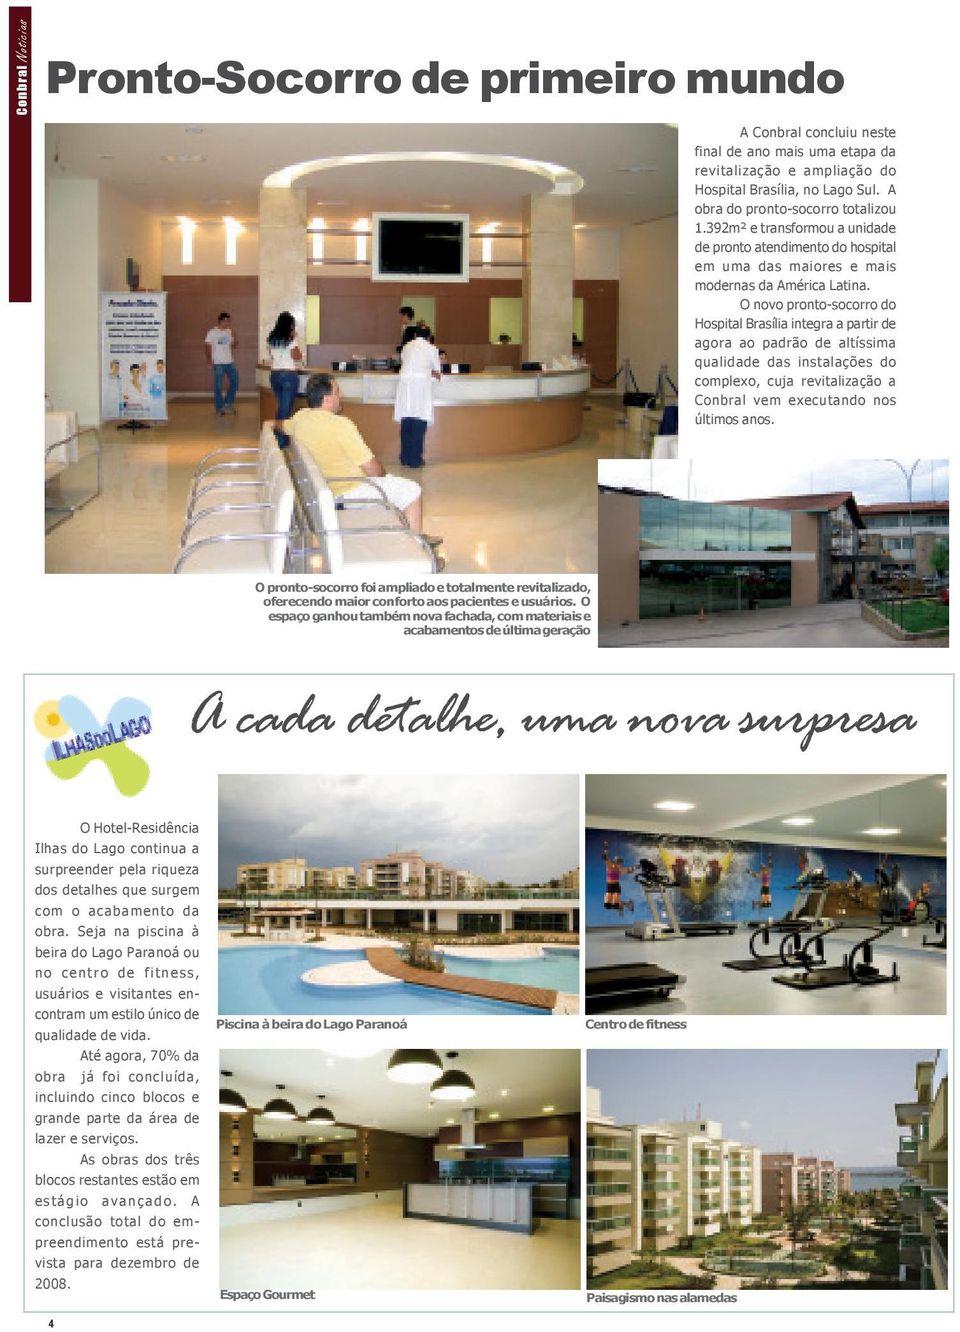 O novo pronto-socorro do Hospital Brasília integra a partir de agora ao padrão de altíssima qualidade das instalações do complexo, cuja revitalização a Conbral vem executando nos últimos anos.